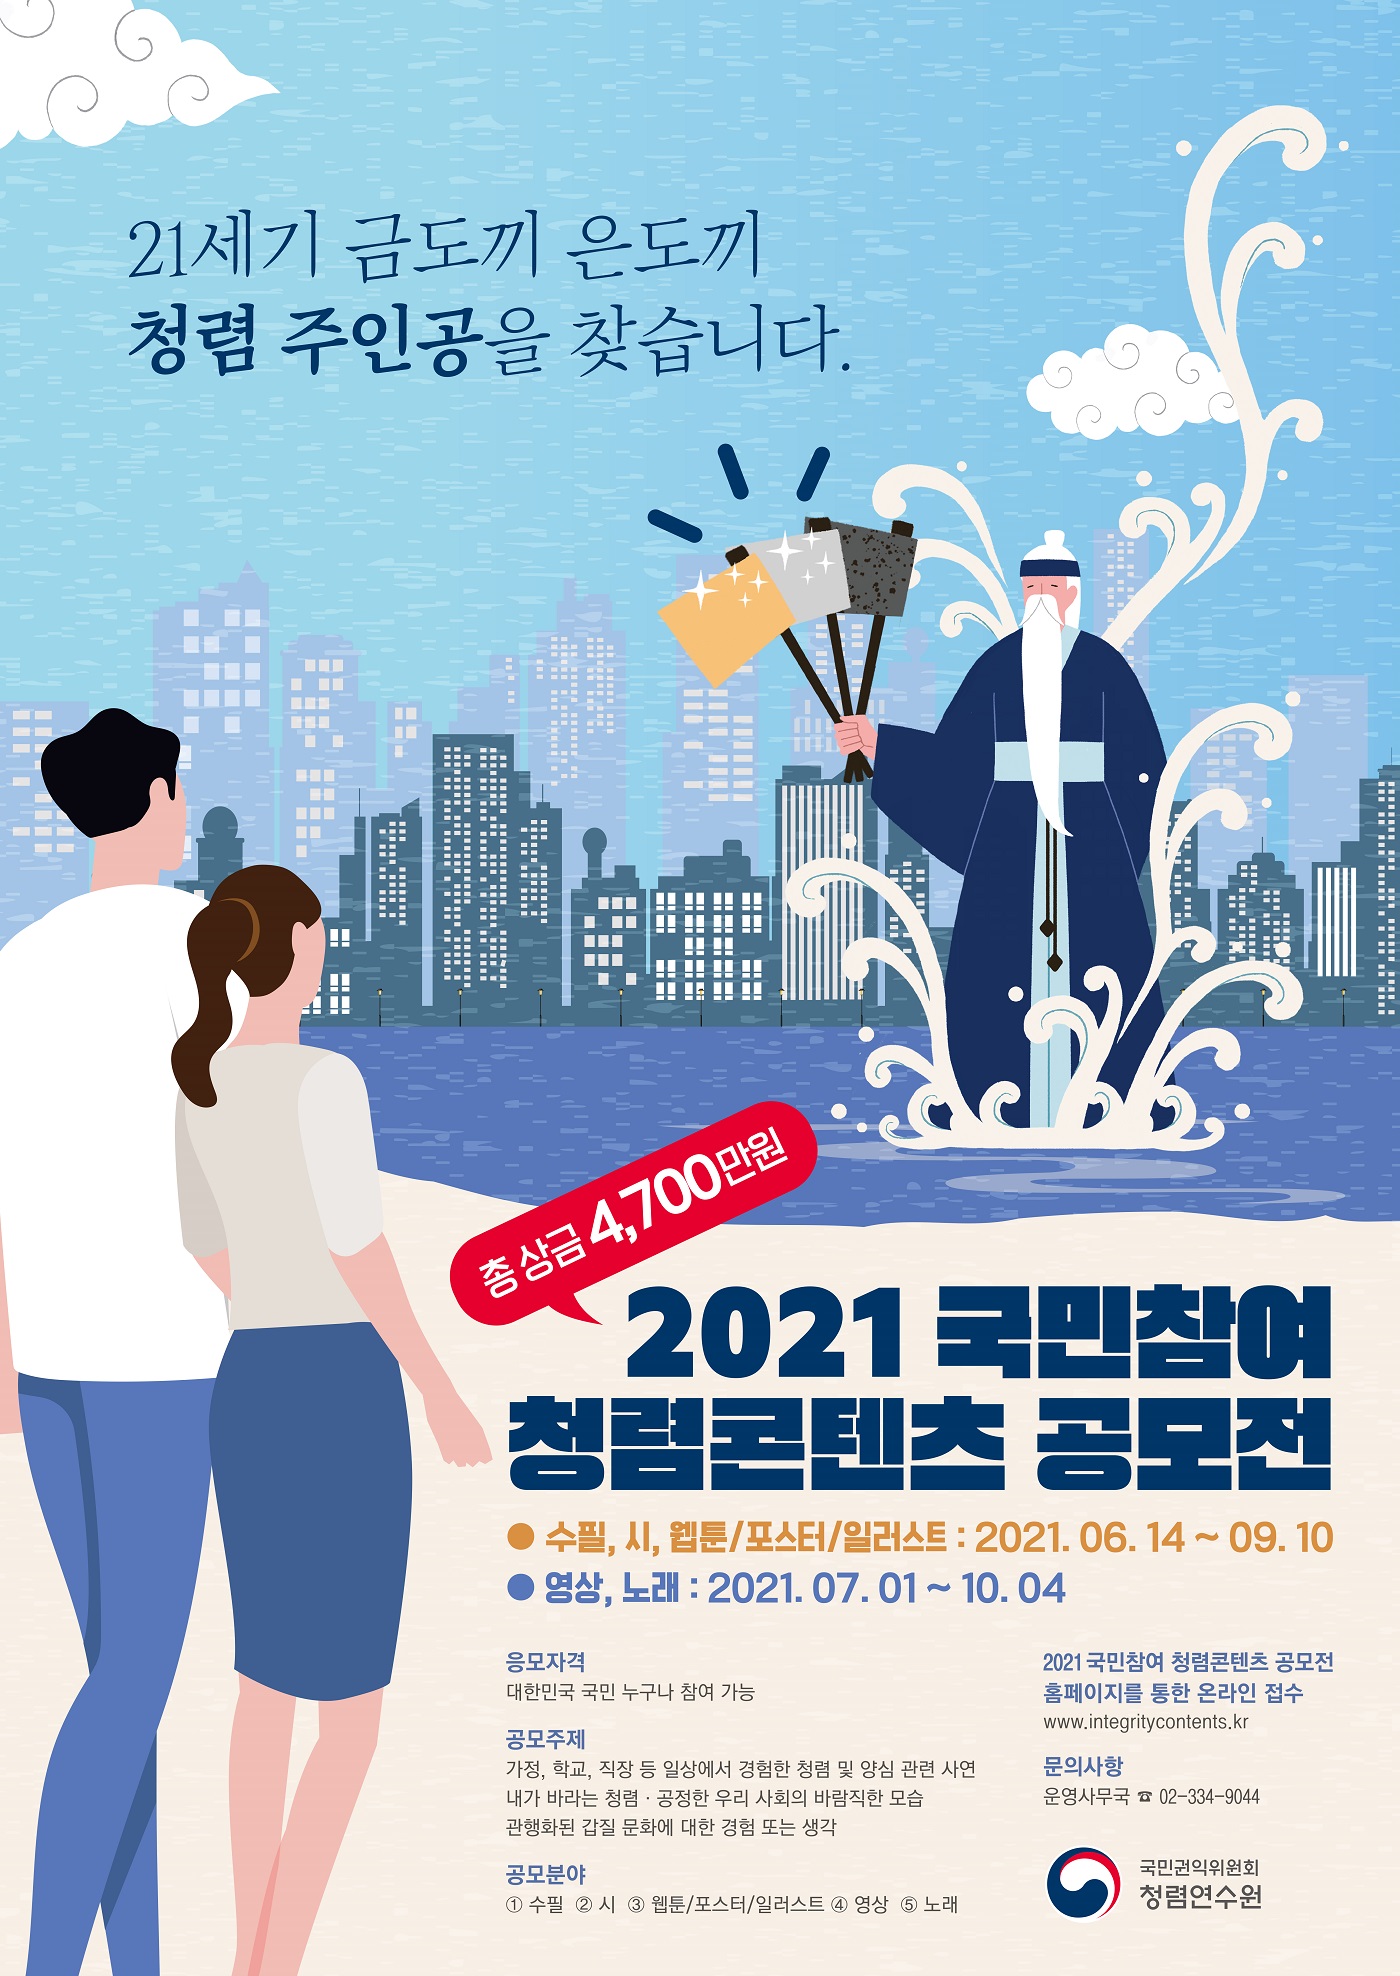 2021 국민참여 청렴콘텐츠 공모전 포스터_자세한 내용 하단참조